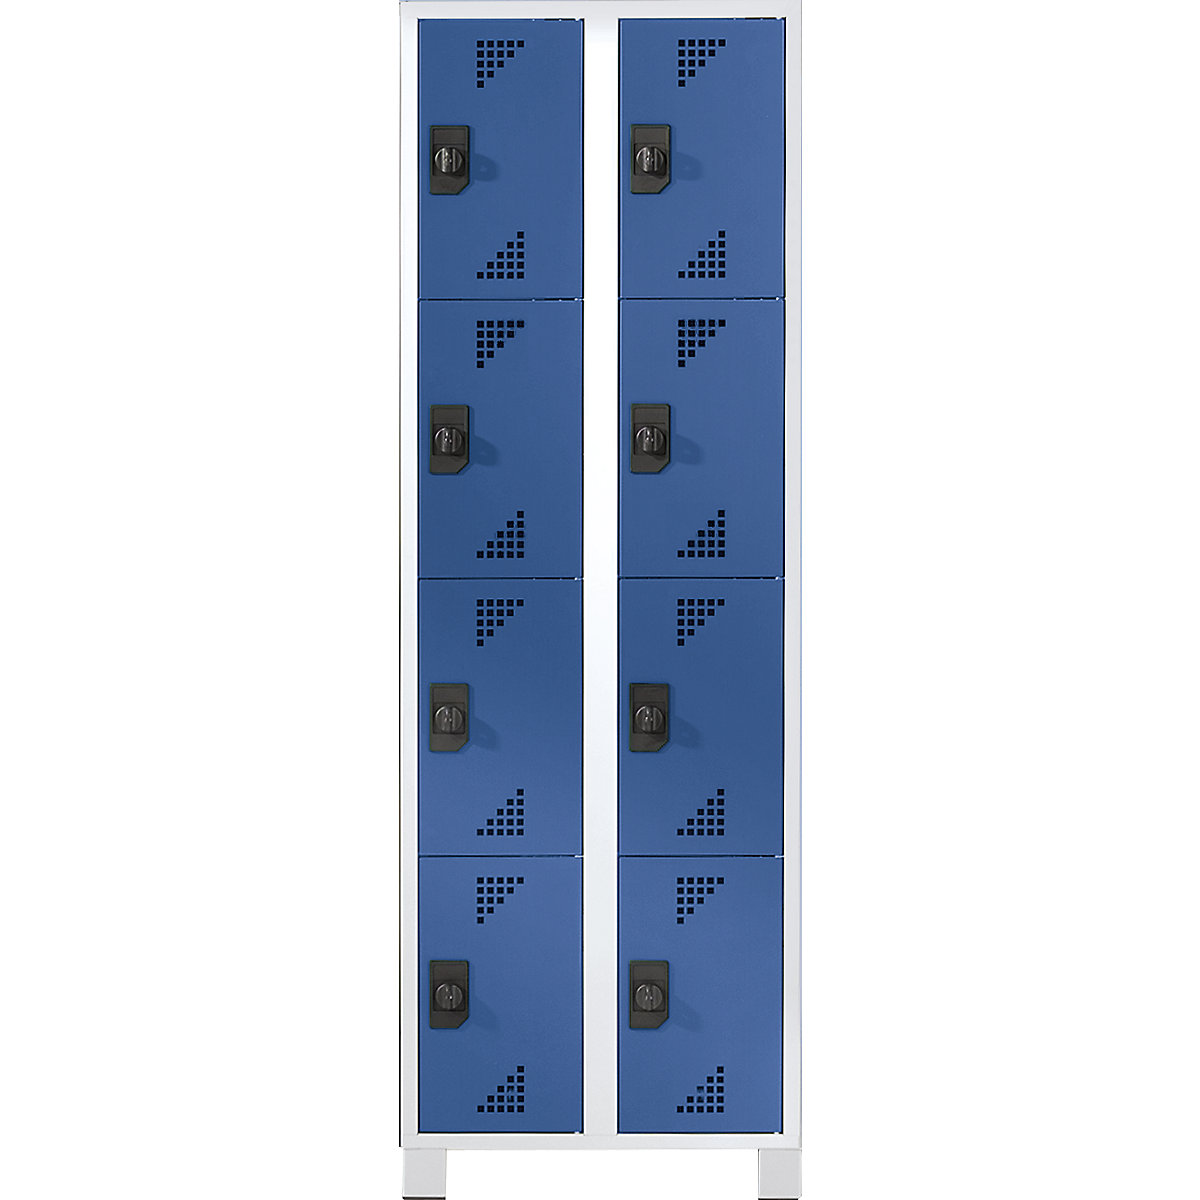 Omara s predelki z zaklepanjem, višina predelka 418 mm – eurokraft pro, VxŠxG 1800 x 600 x 500 mm, 8 predelkov, korpus svetlo siv, vrata briljantno modra-5